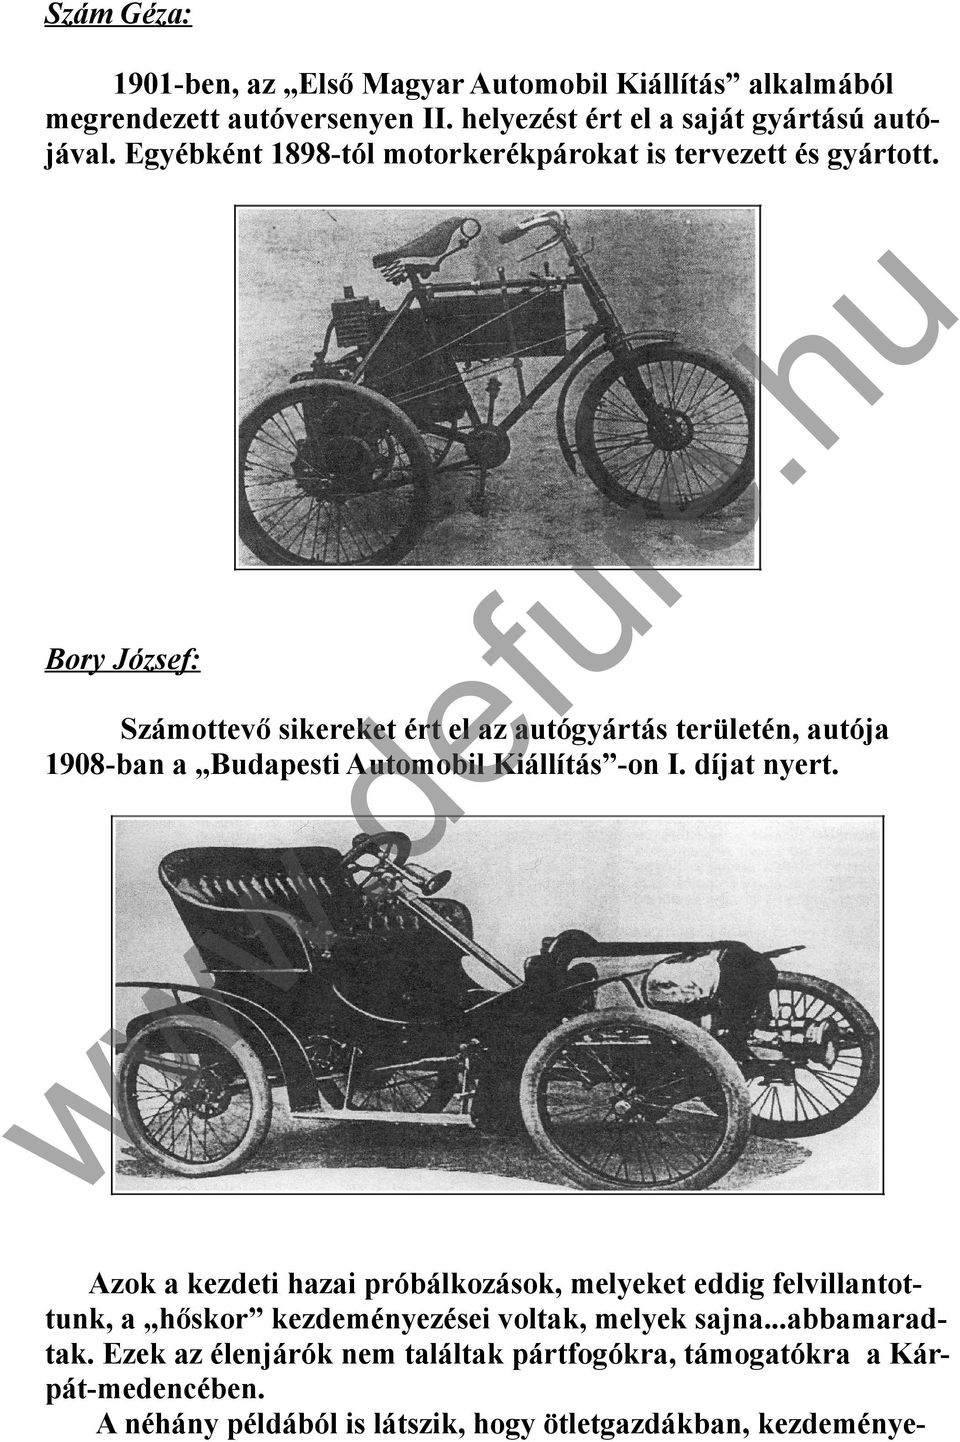 Számottevő sikereket ért el az autógyártás területén, autója 1908-ban a Budapesti Automobil Kiállítás -on I. díjat nyert.